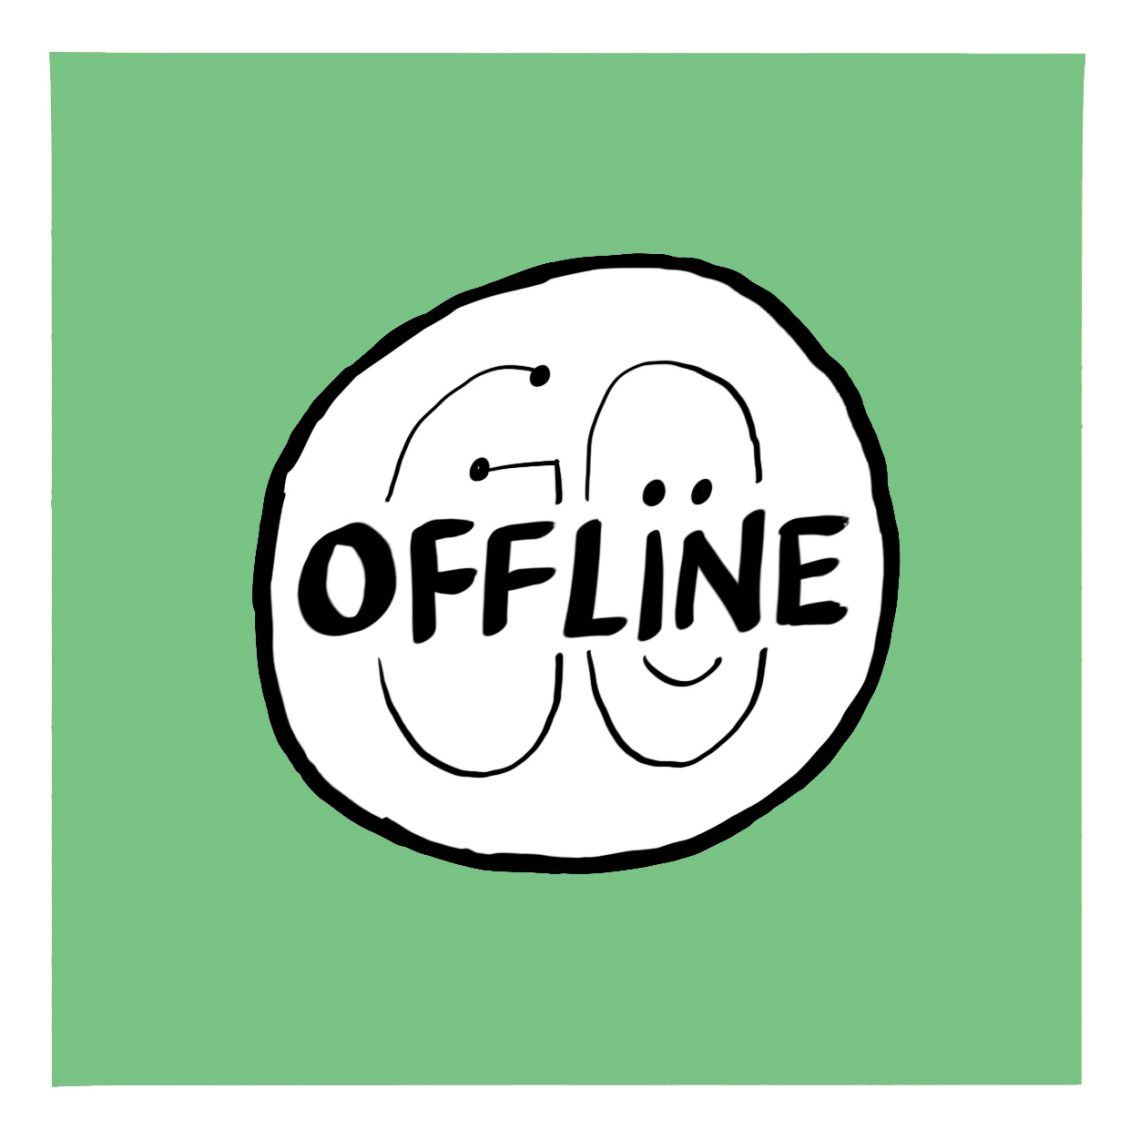 go offline